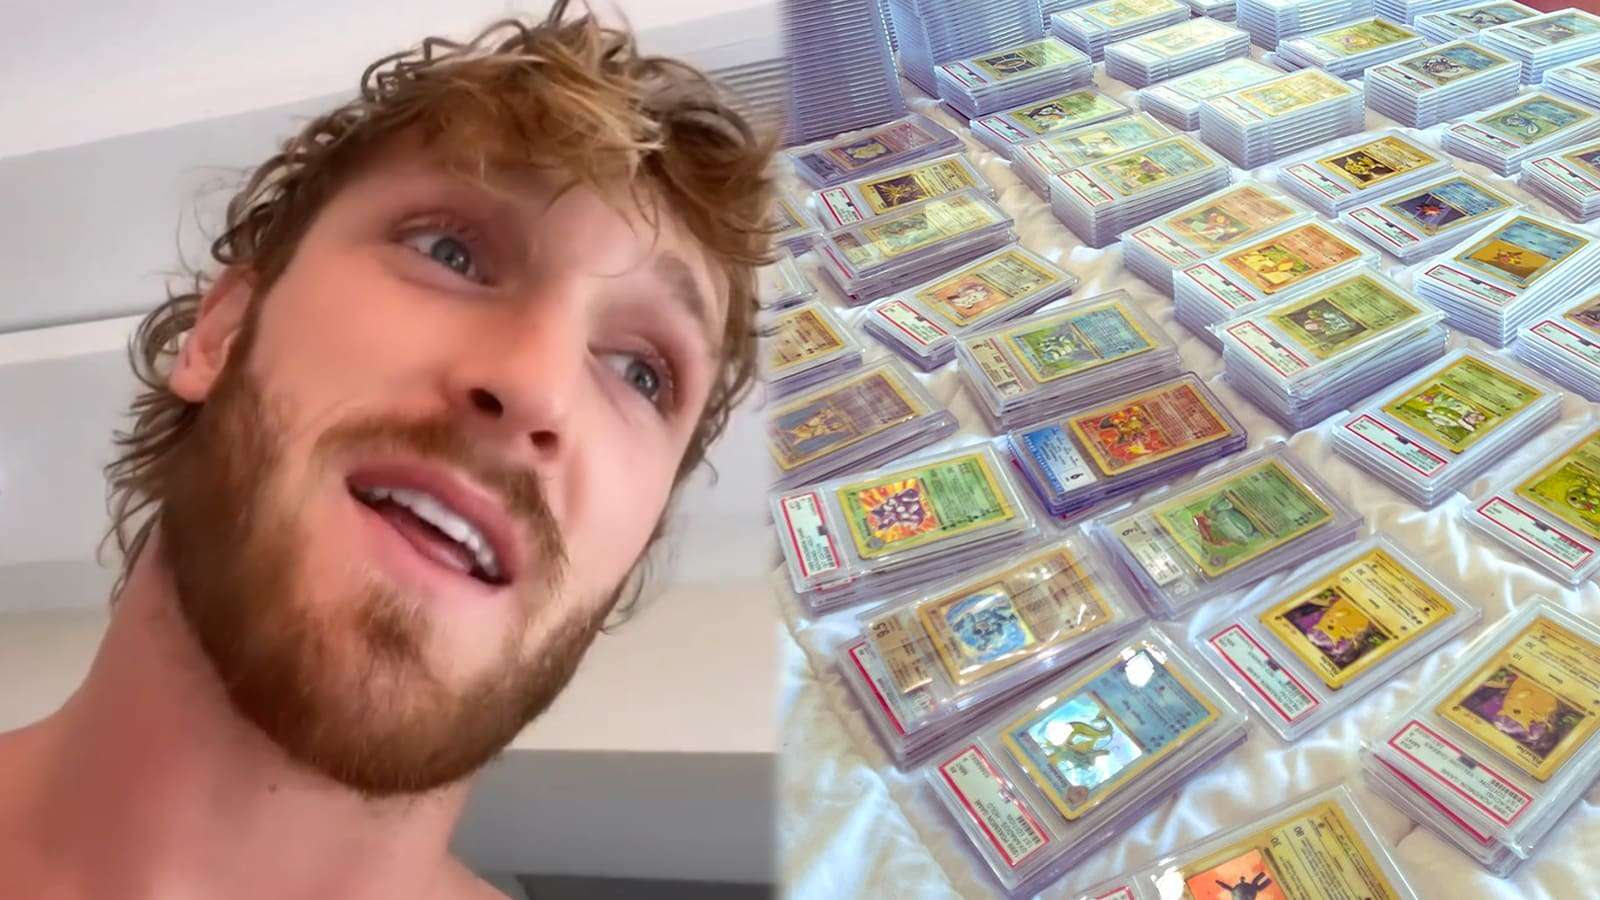 Logan Paul staring at his Pokemon Card collection screenshot.